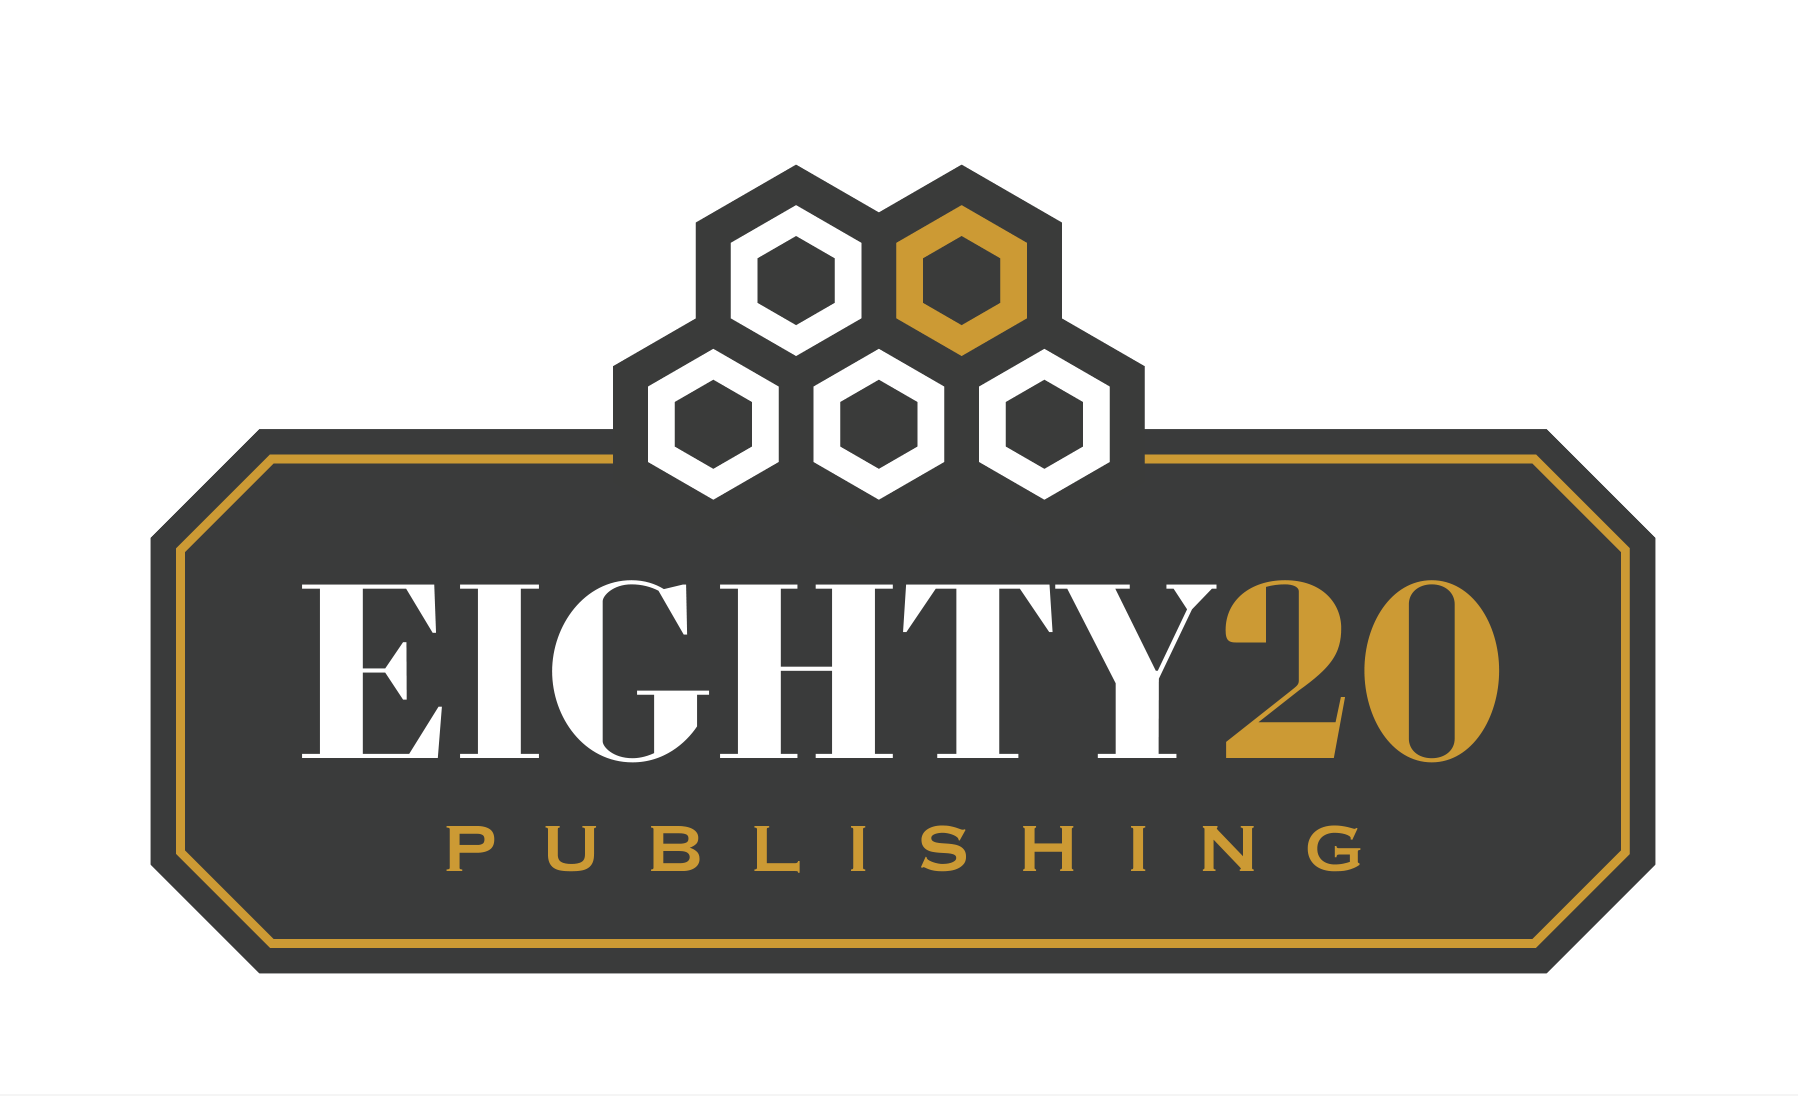 Eighty20 Publishing